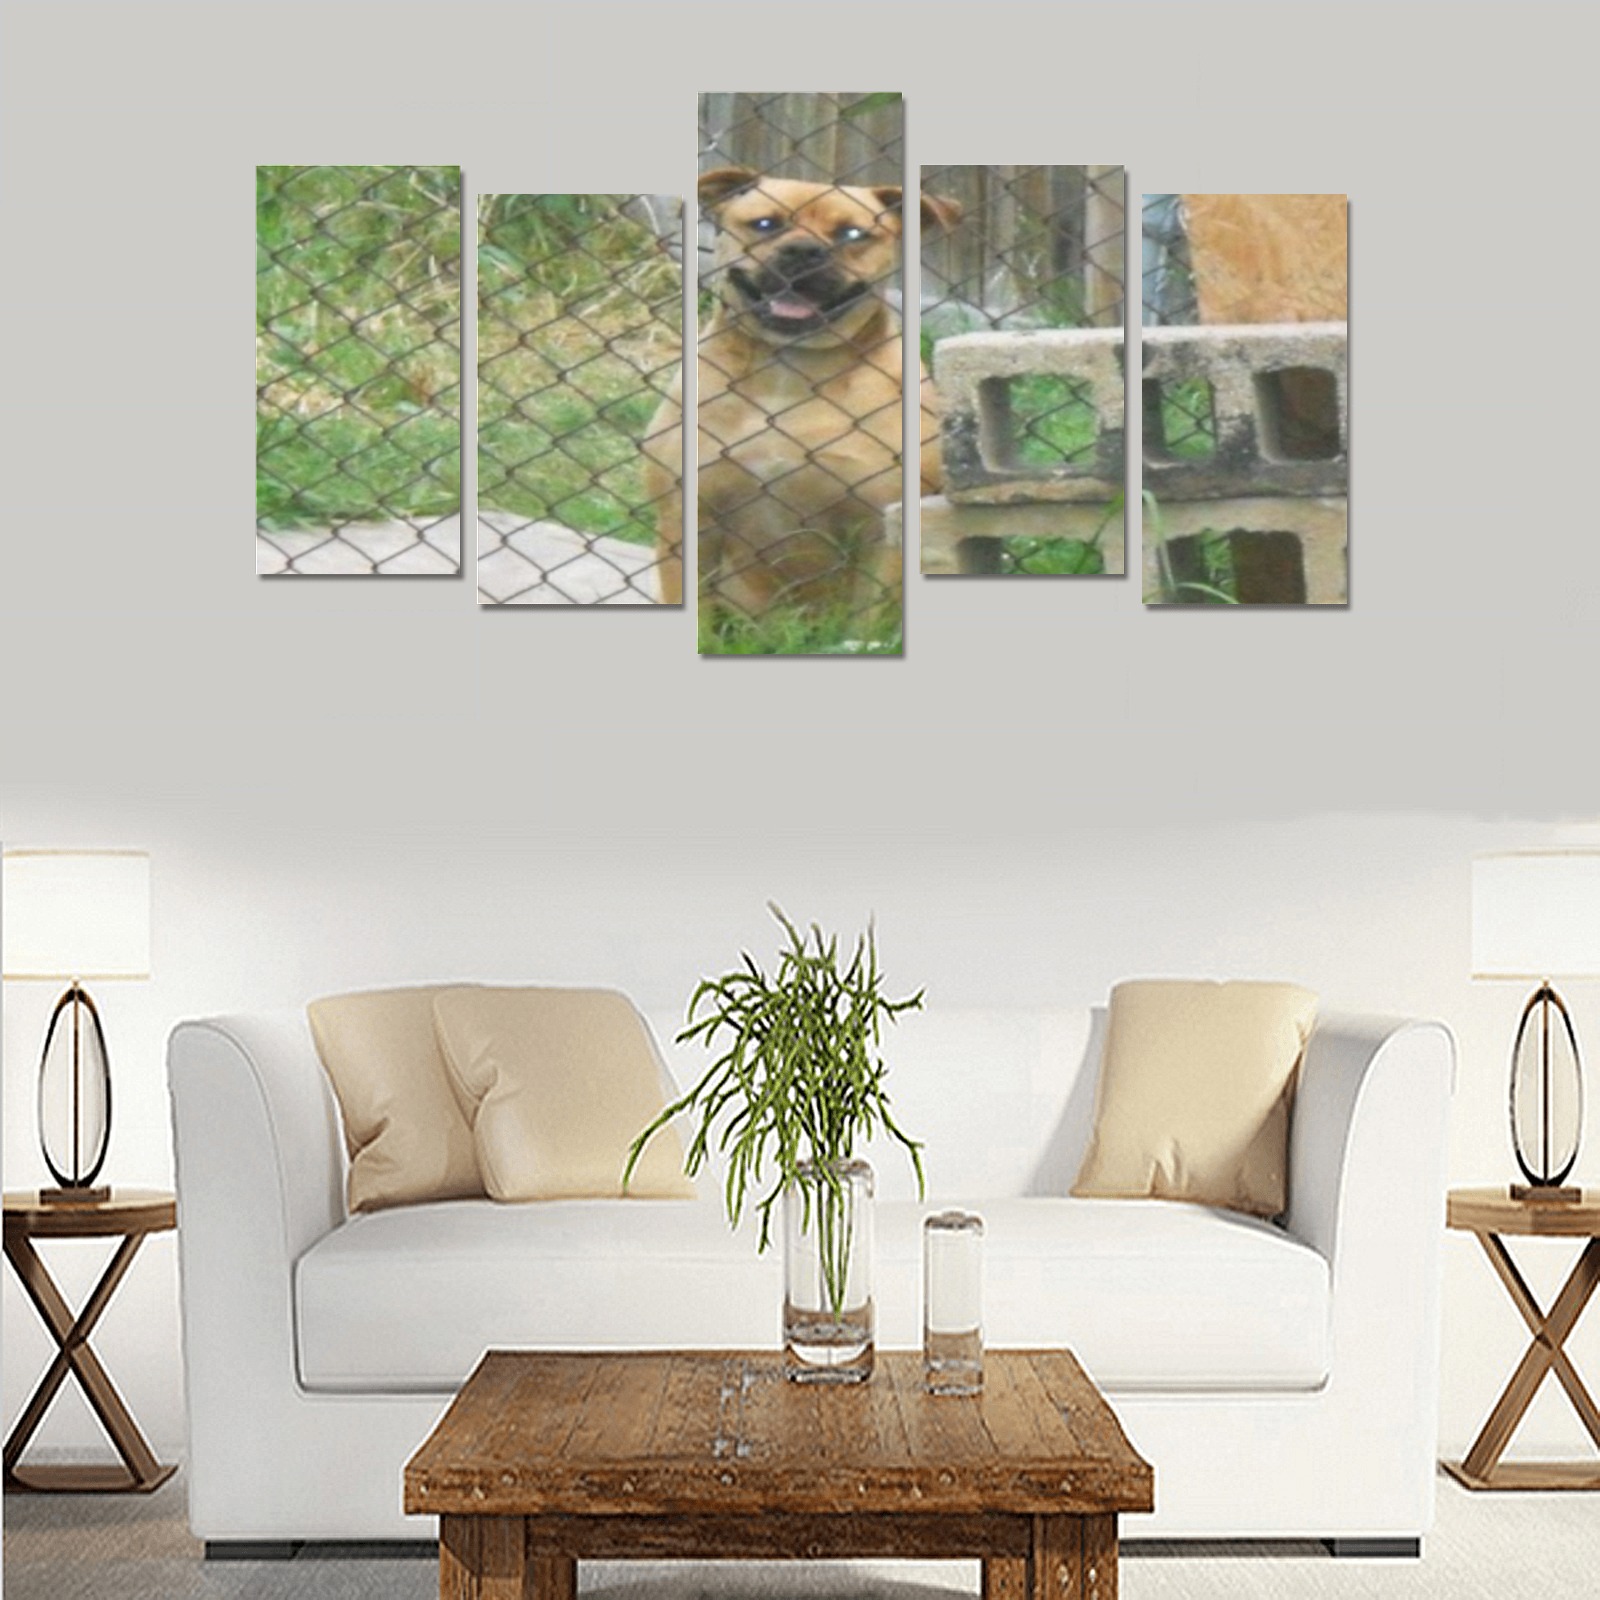 A Smiling Dog Canvas Print Sets E (No Frame)